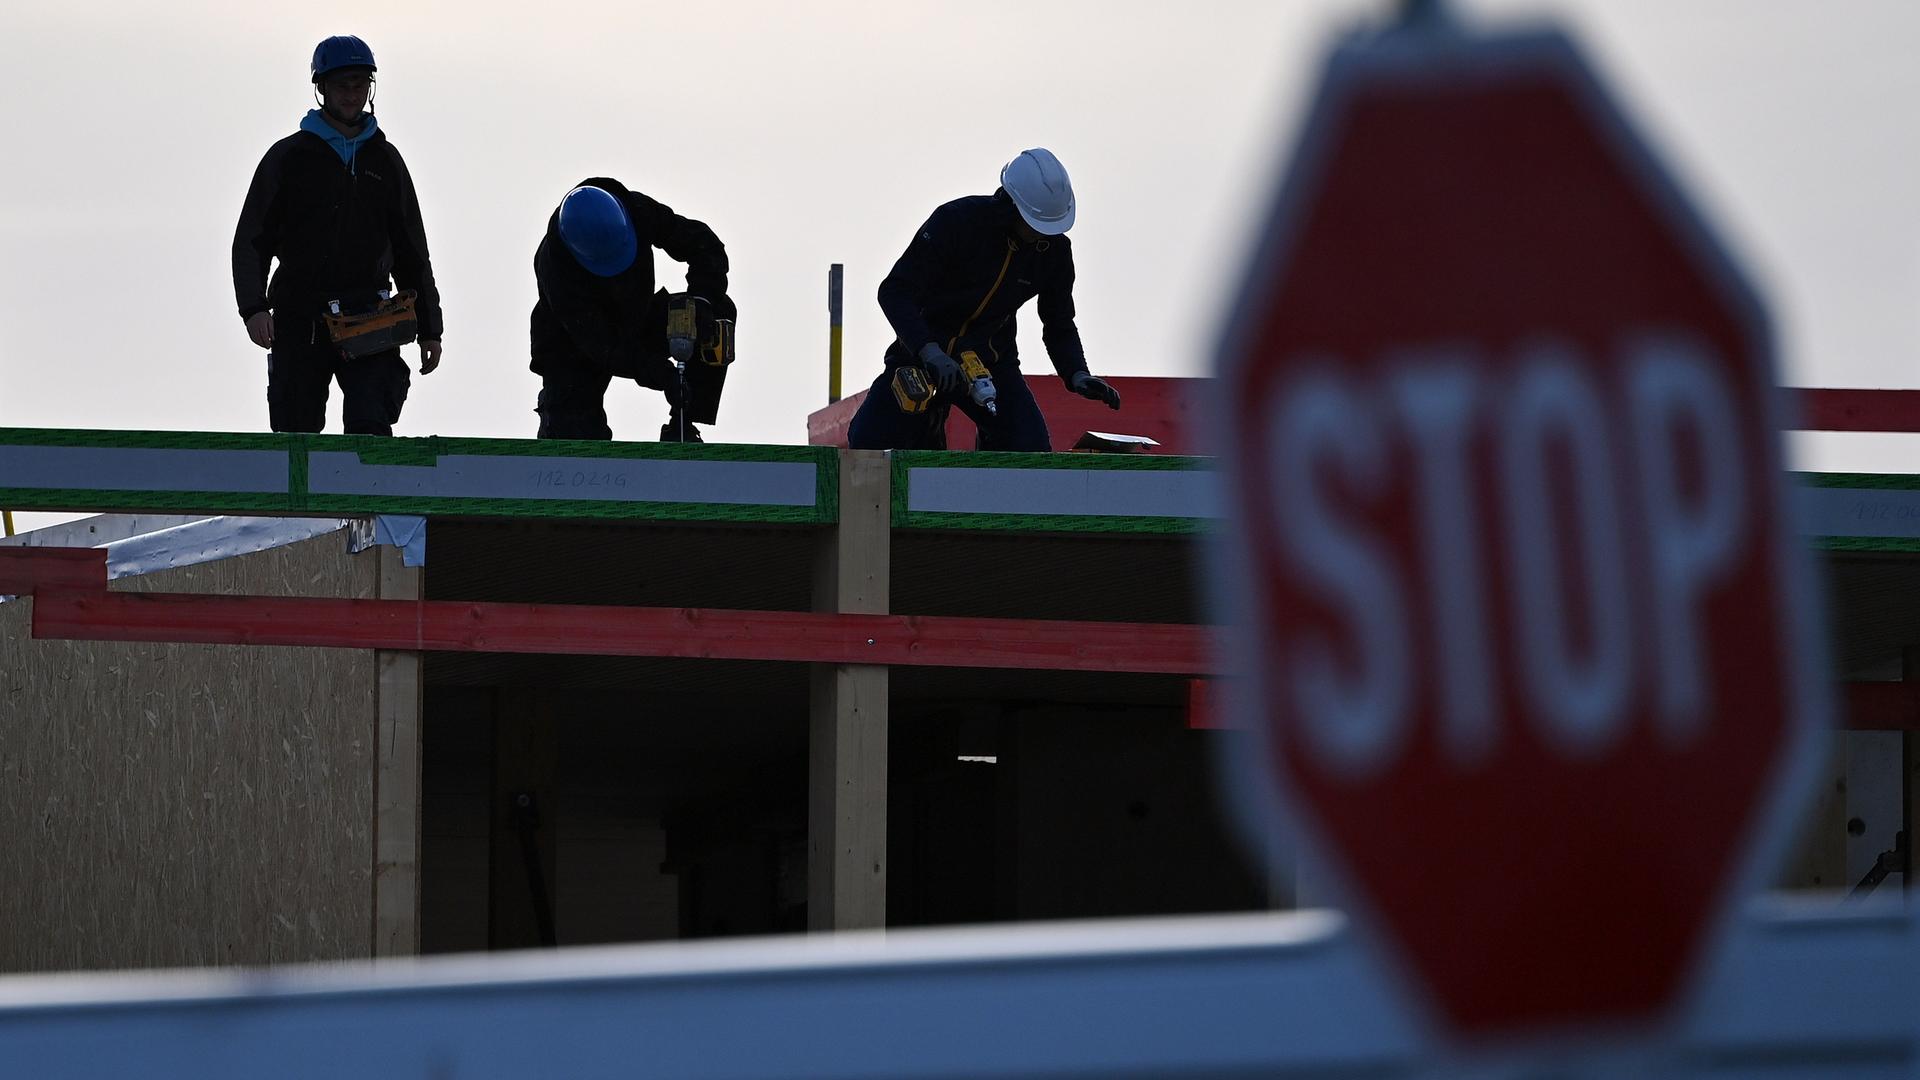 Eine Baustelle mit Arbeiter, die Helm tragen, im Vordergrund ist ein Stopp-Schild.